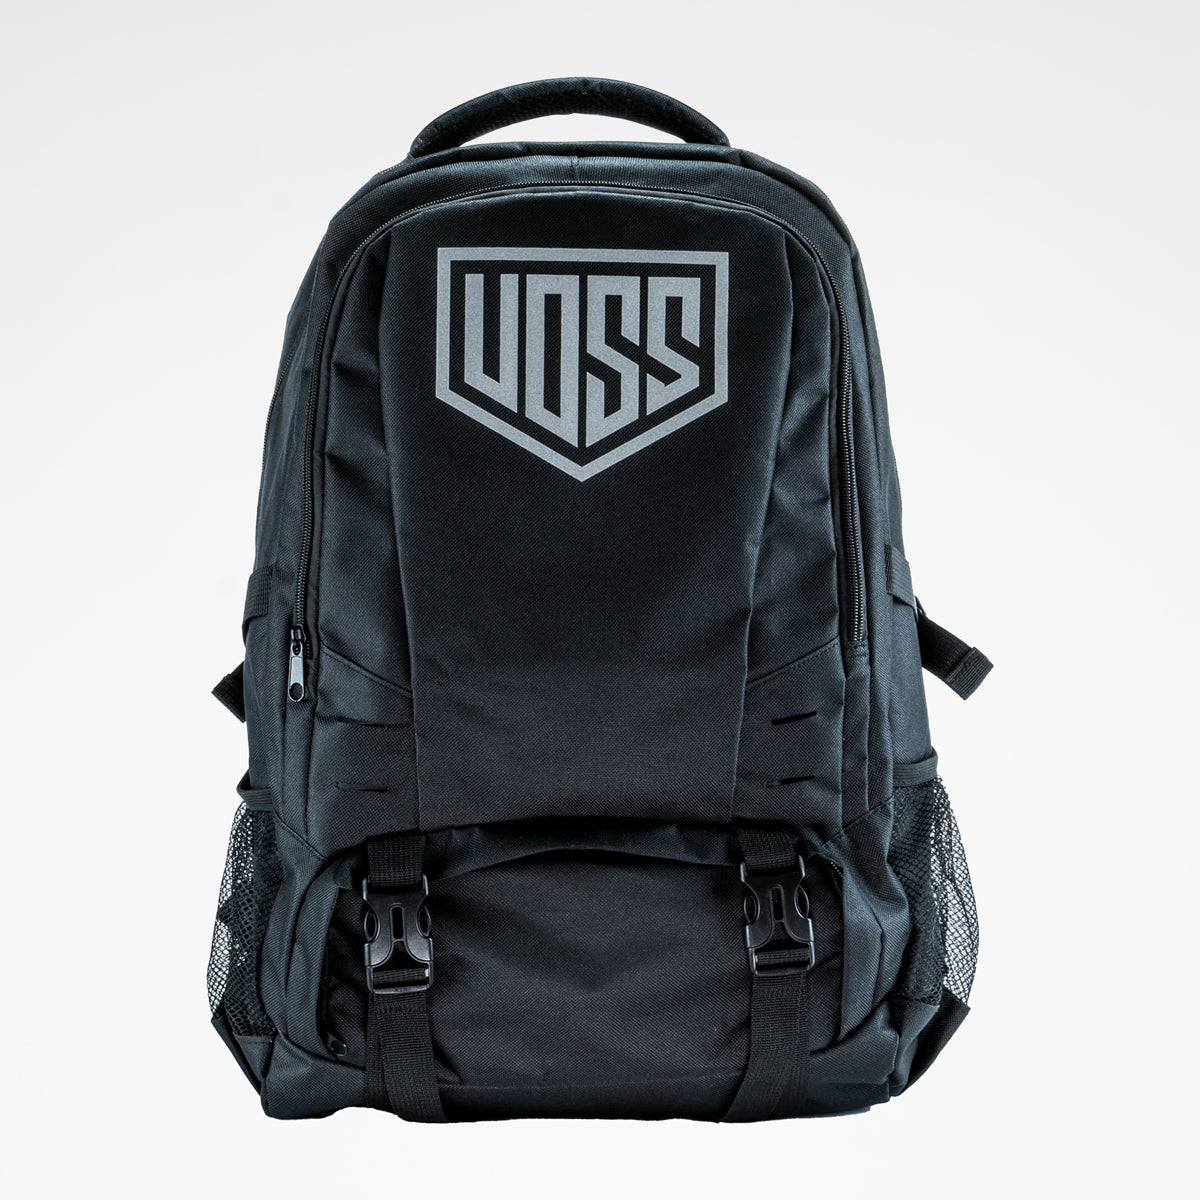 Voss Backpacks